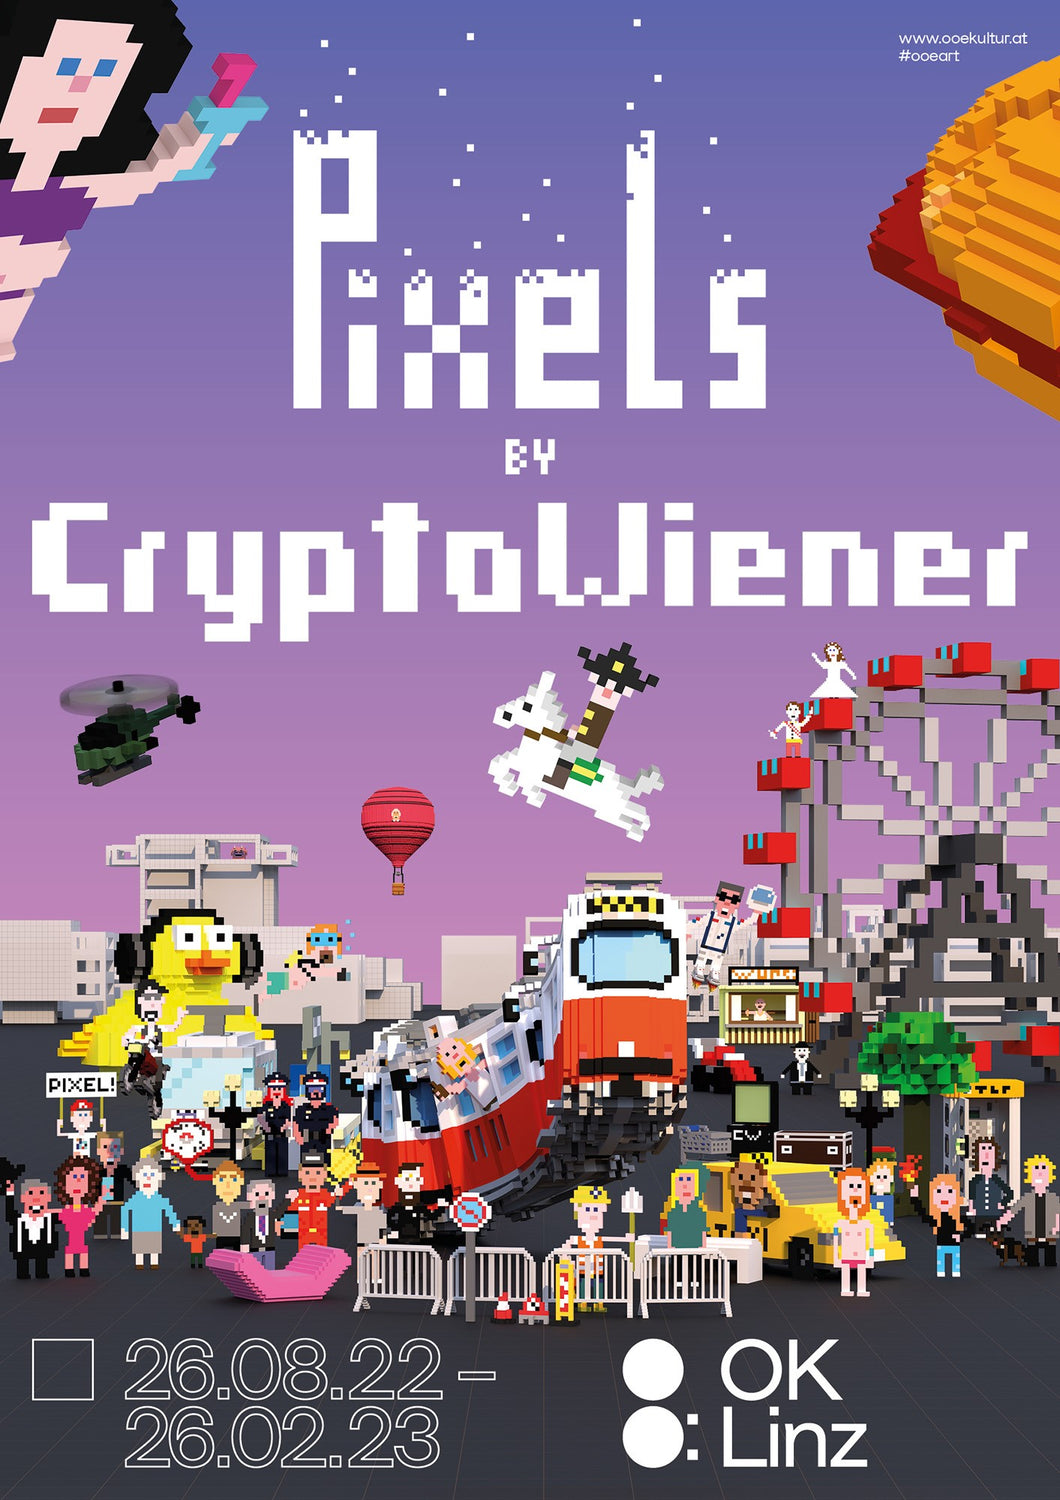 Plakat zur Ausstellung PIXELS by CryptoWiener